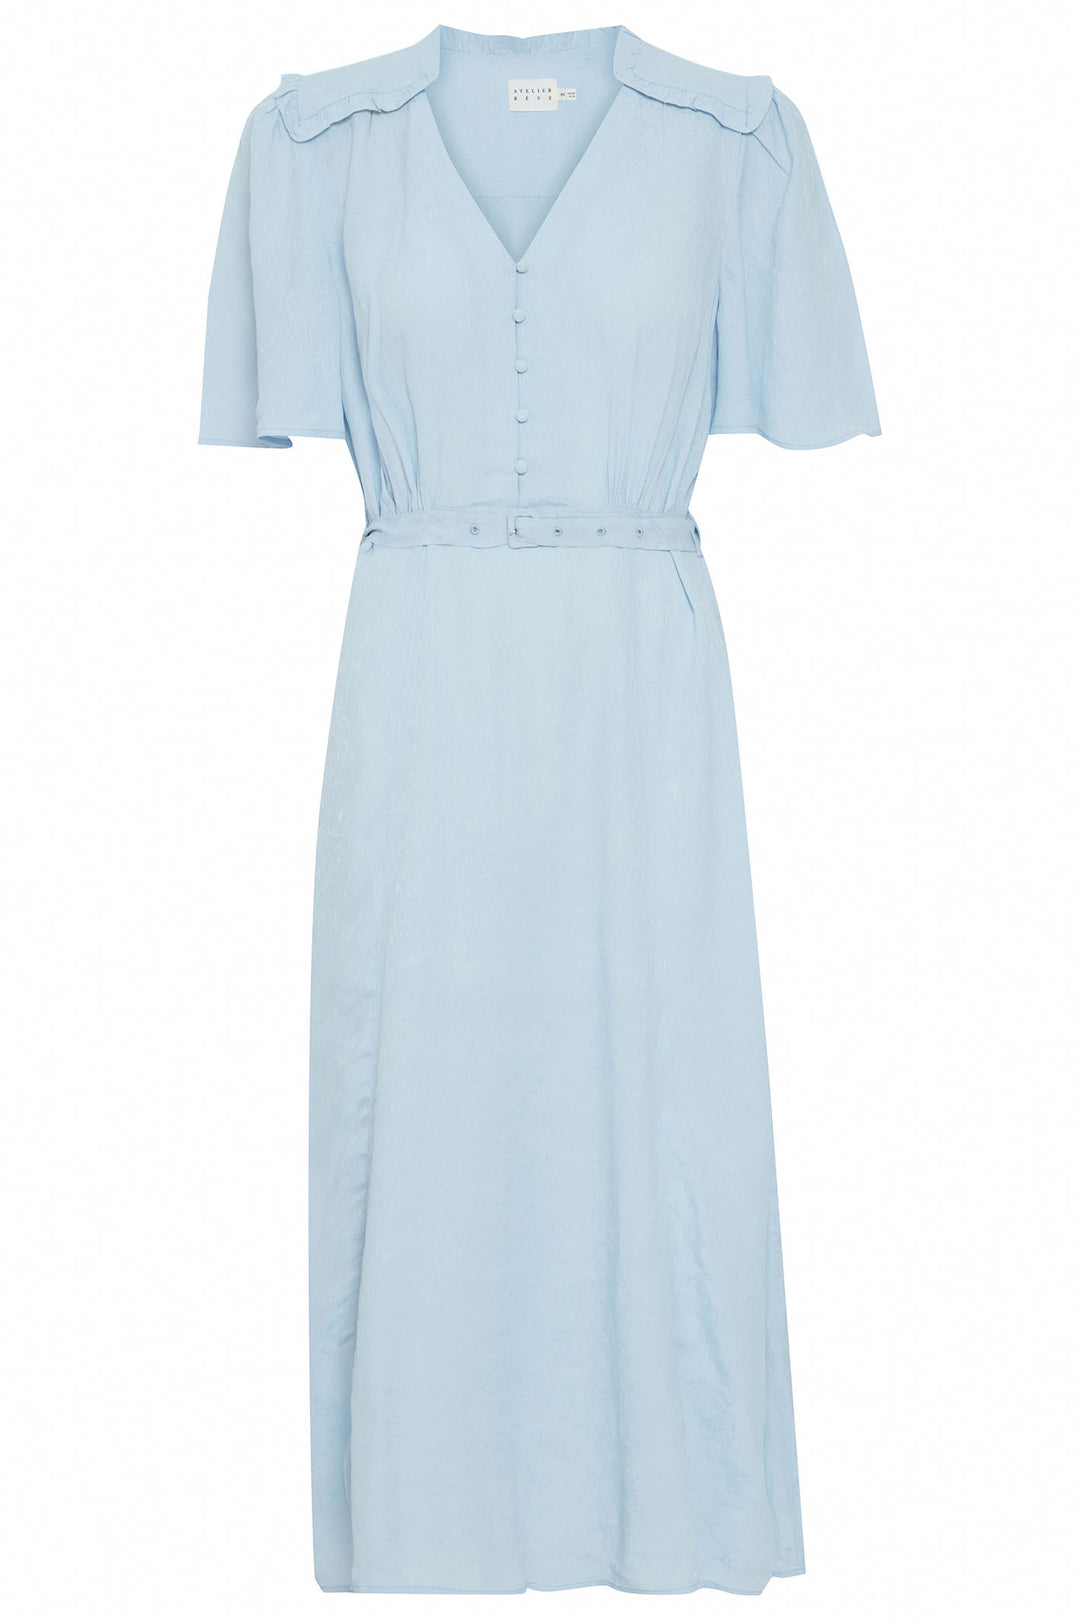 Atelier Reve 20120636 IRSANDA Cashmere Blue Button Front Dress - Dotique Chesterfield